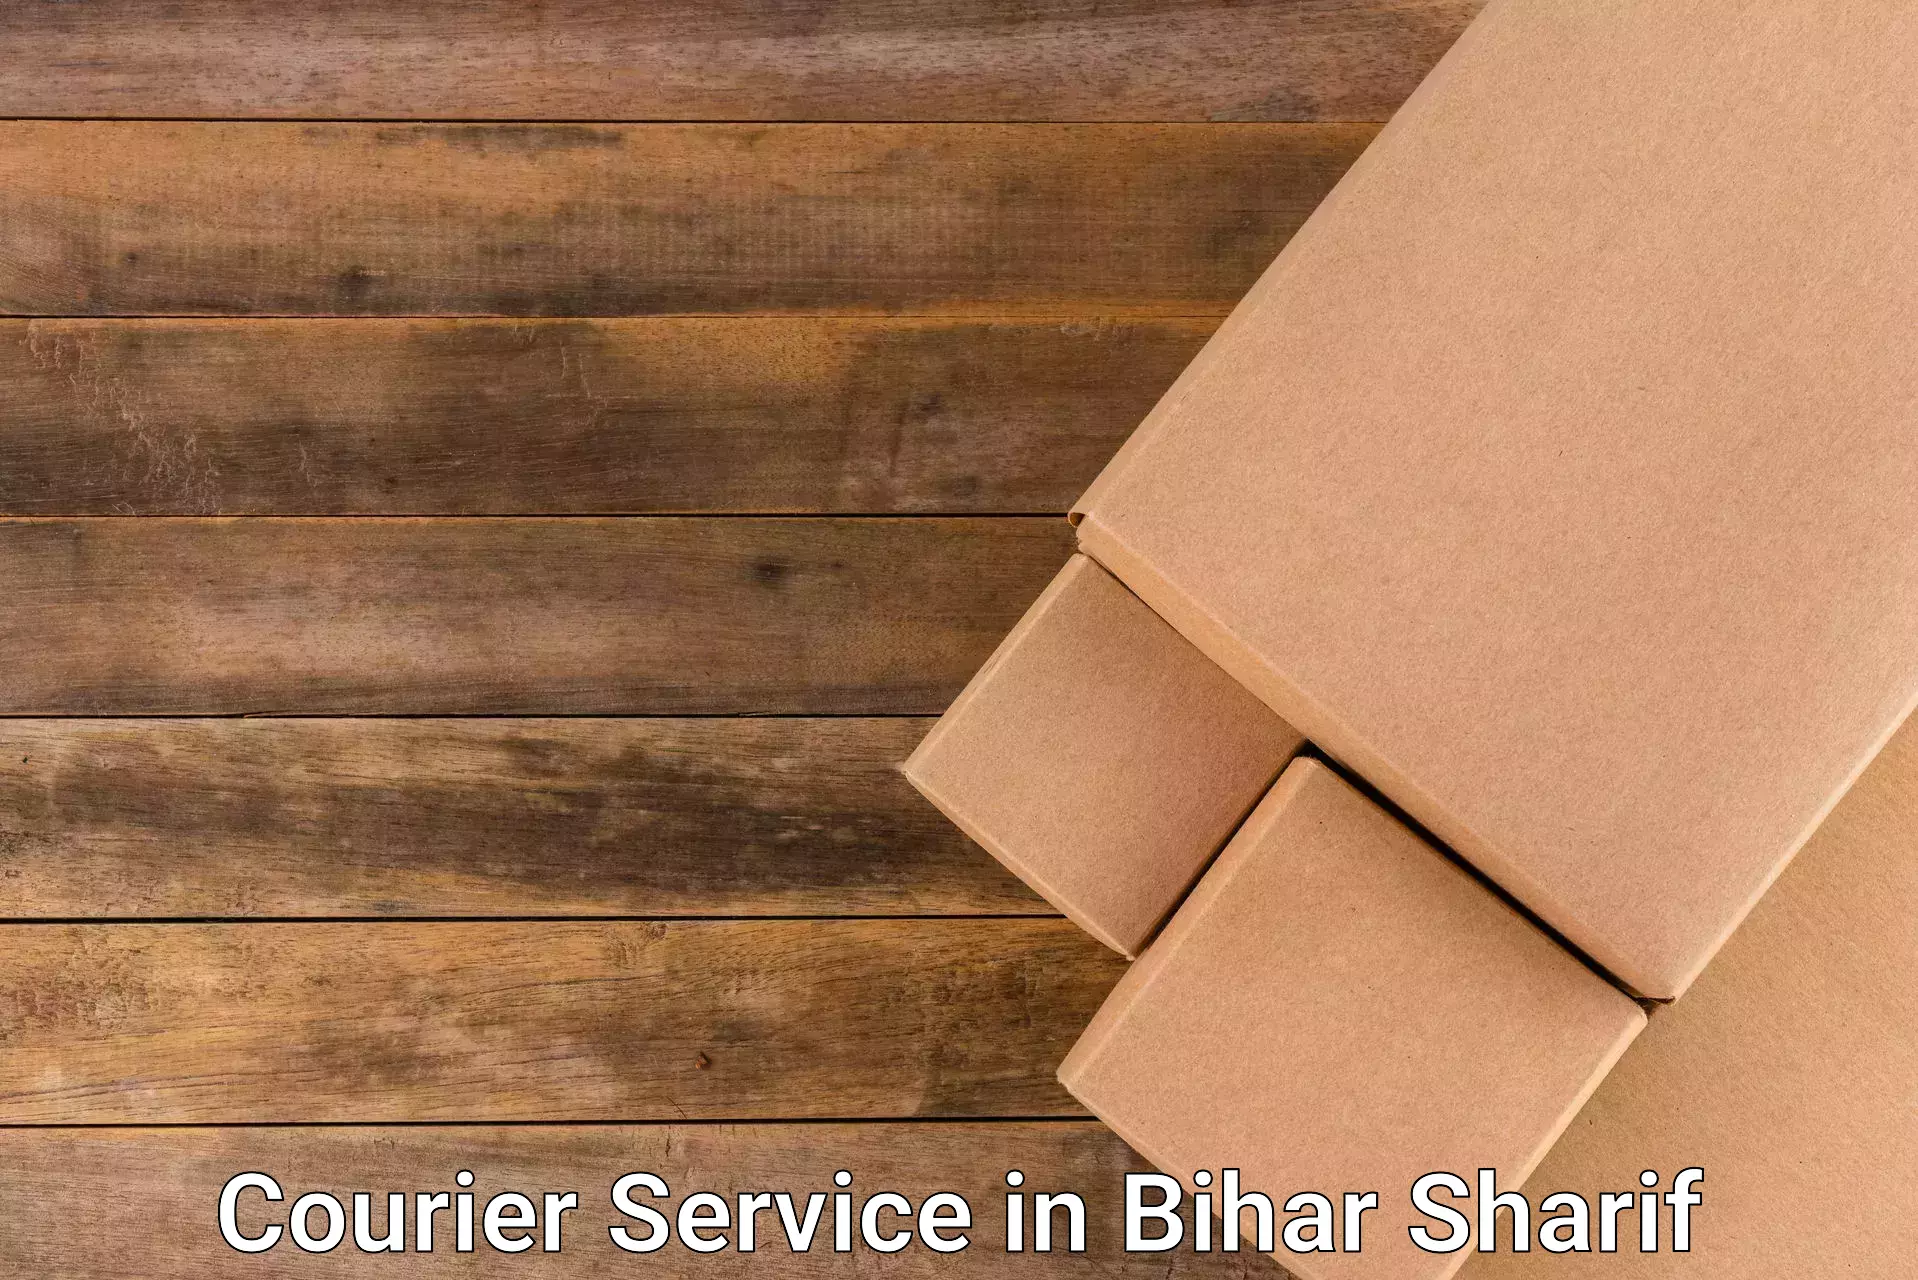 Efficient freight service in Bihar Sharif